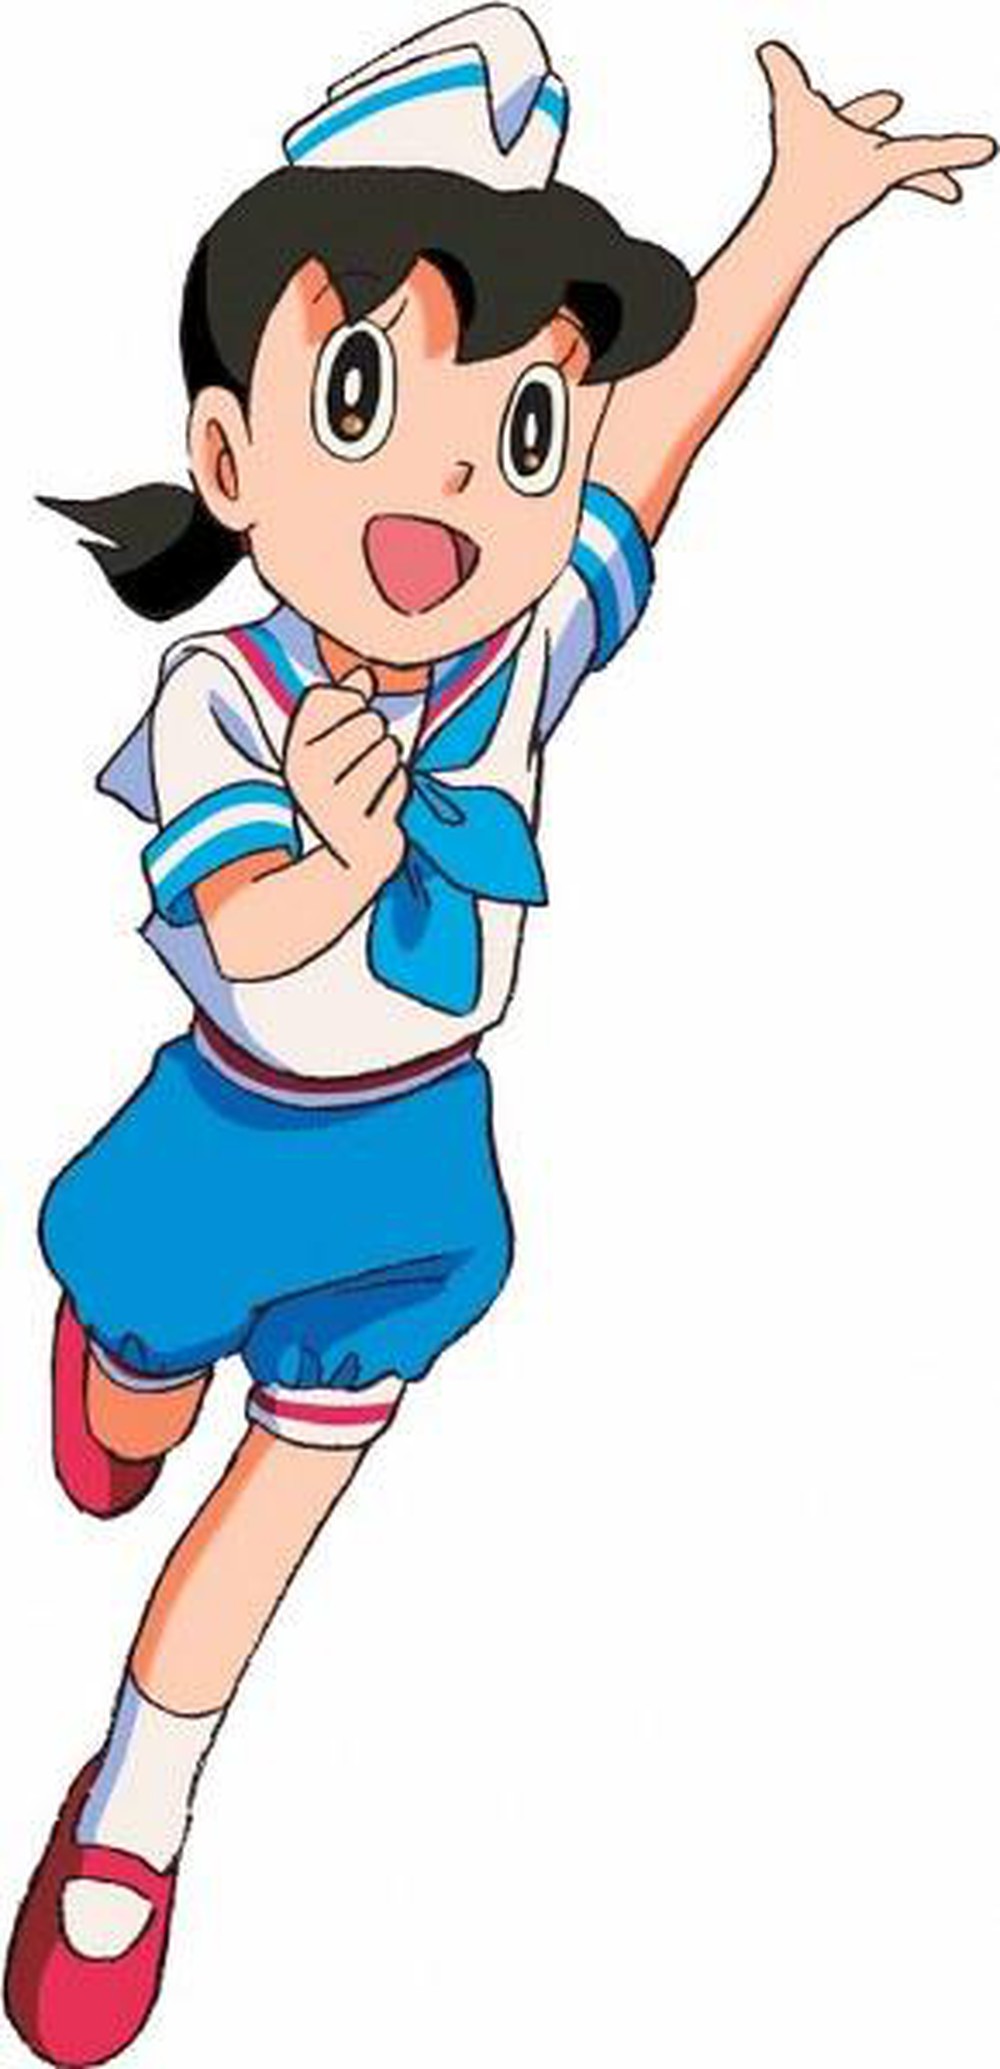 Xuka là một trong những nhân vật nữ đáng yêu trong bộ truyện Doraemon. Với tóc vàng và đôi mắt to tròn, Xuka là một trong những nhân vật được yêu thích nhất trong cộng đồng trẻ. Hãy xem hình ảnh đáng yêu của cô ấy để cảm nhận sự xinh đẹp và quyến rũ.